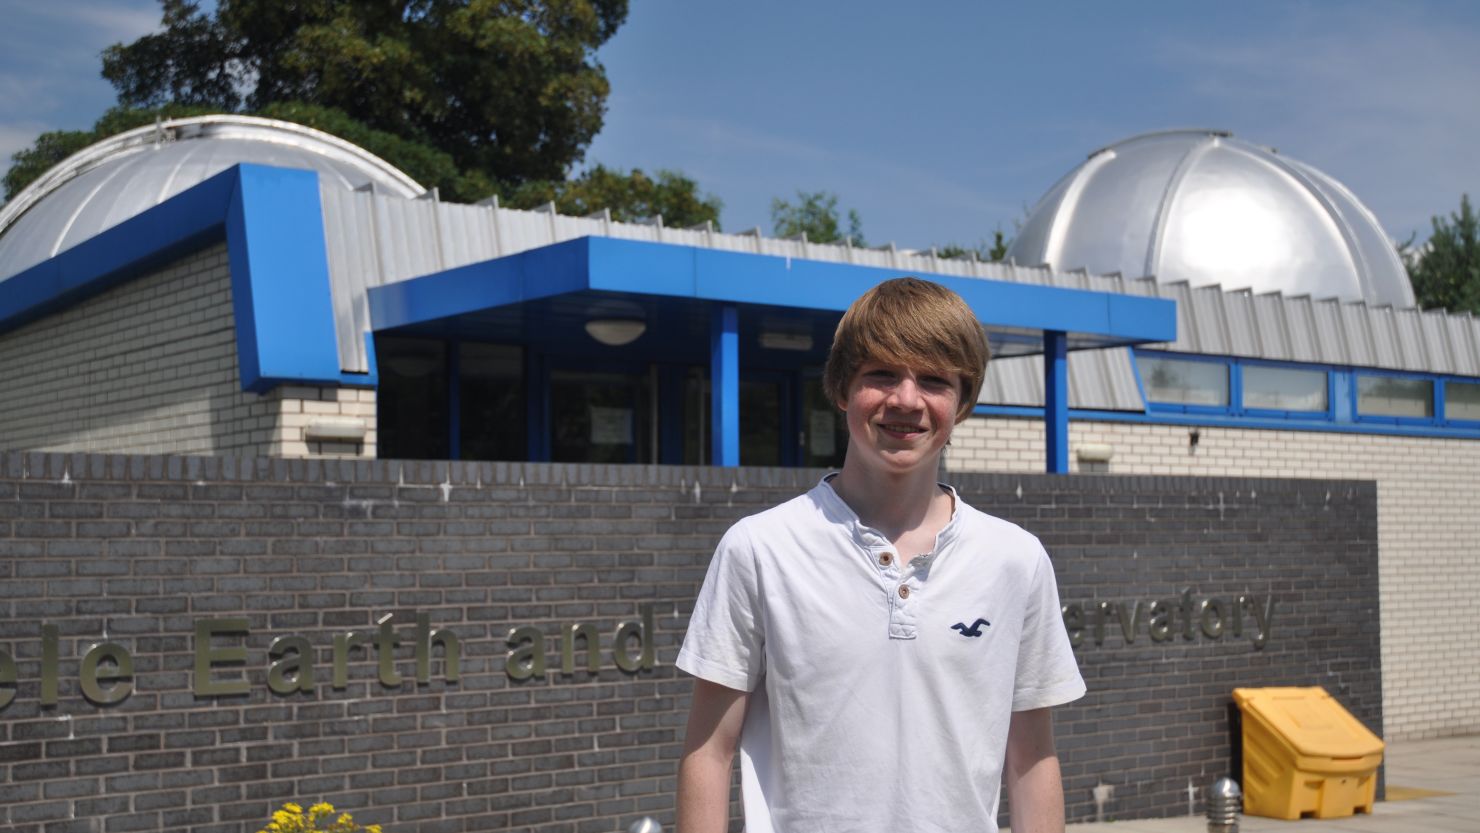 Tom Wagg era becario en el observatorio de la institución educativa cuando descubrió el nuevo plantea (Universidad de Keele).